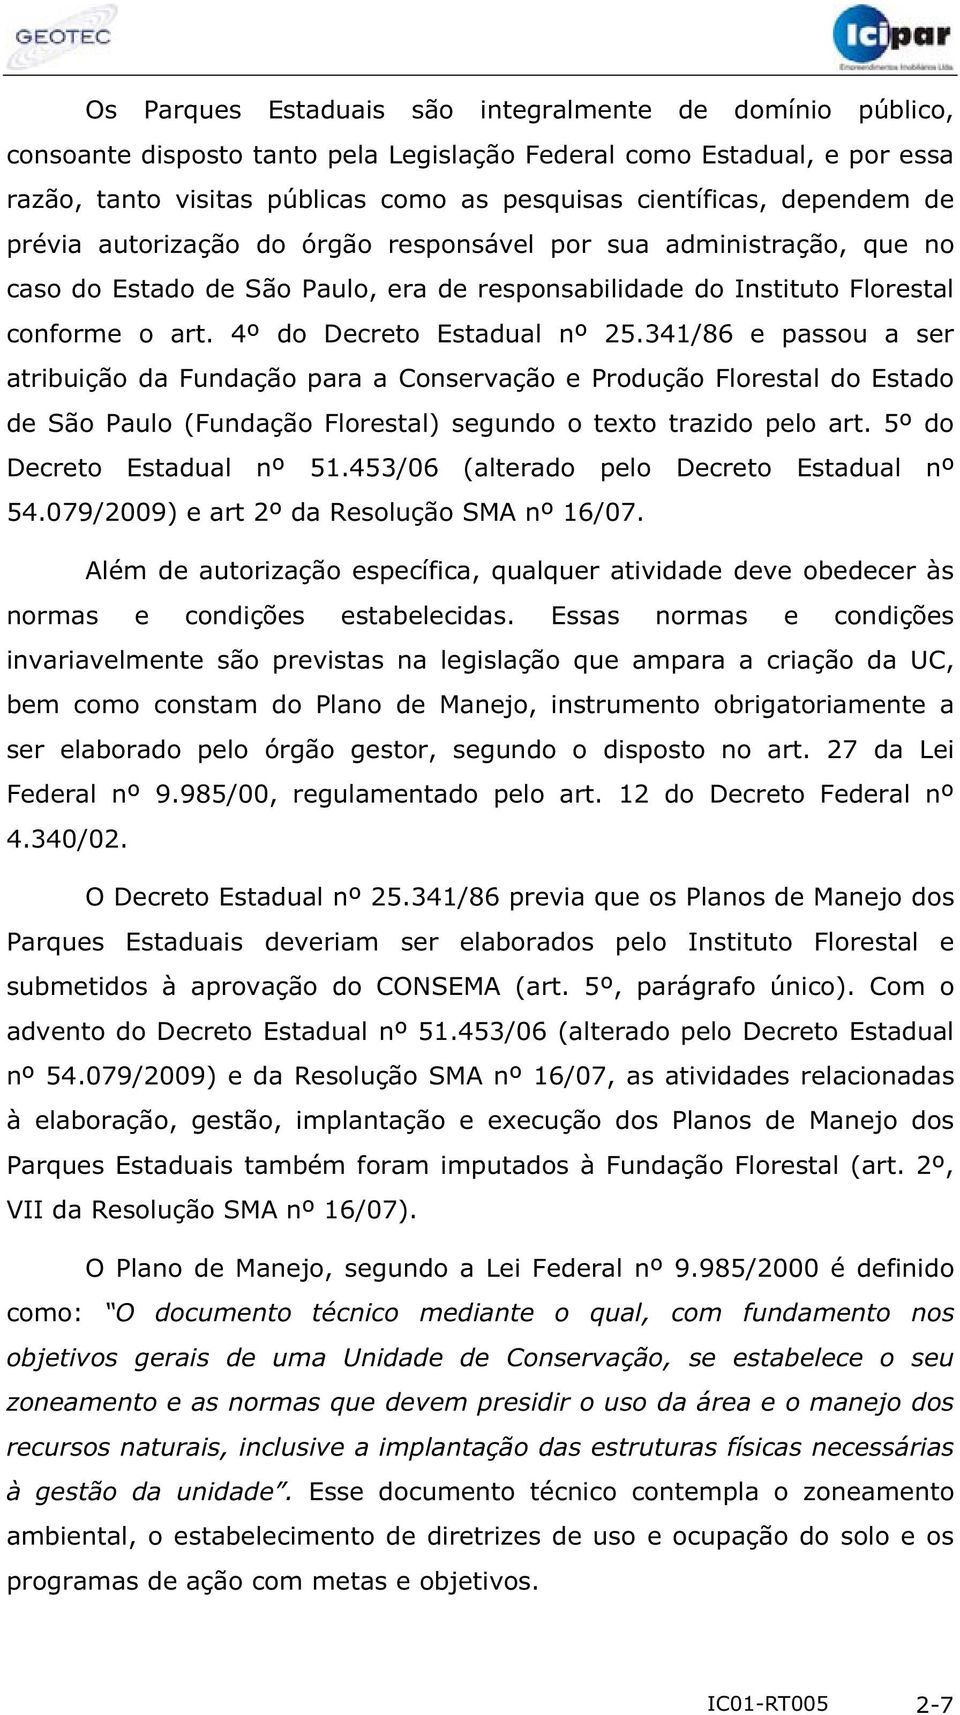 4º do Decreto Estadual nº 25.341/86 e passou a ser atribuição da Fundação para a Conservação e Produção Florestal do Estado de São Paulo (Fundação Florestal) segundo o texto trazido pelo art.